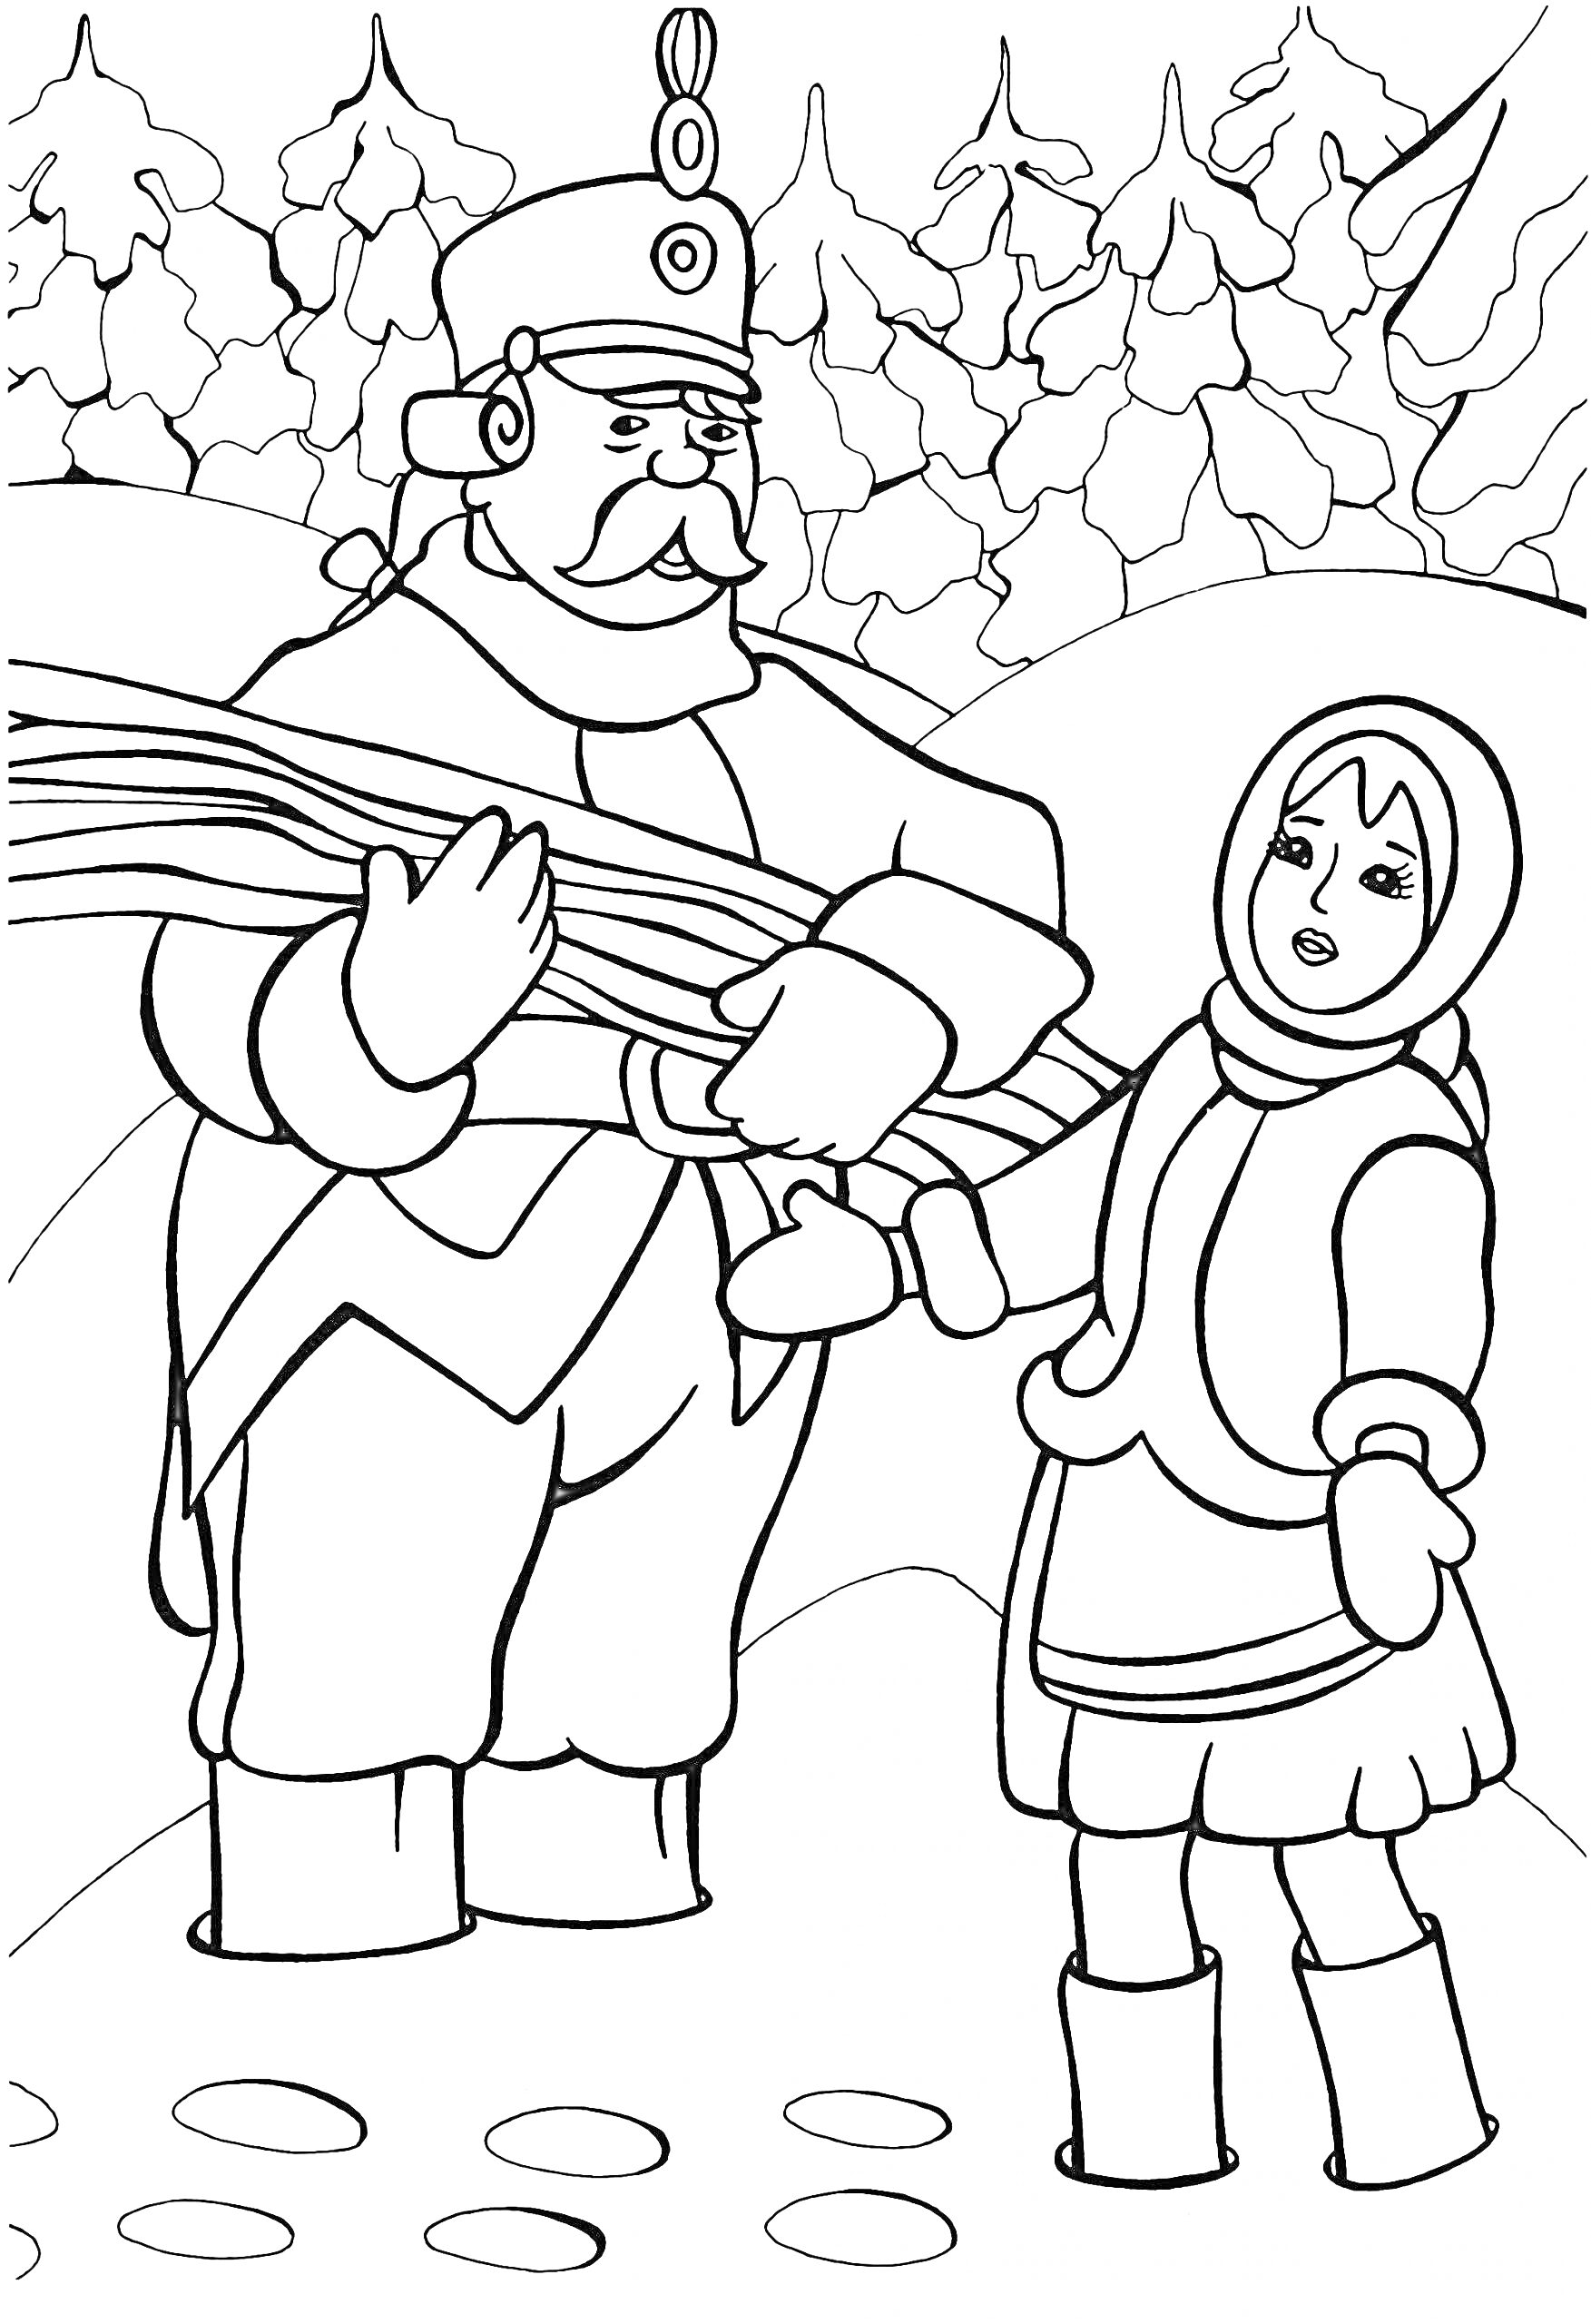 Раскраска Солдат и девочка в зимнем лесу